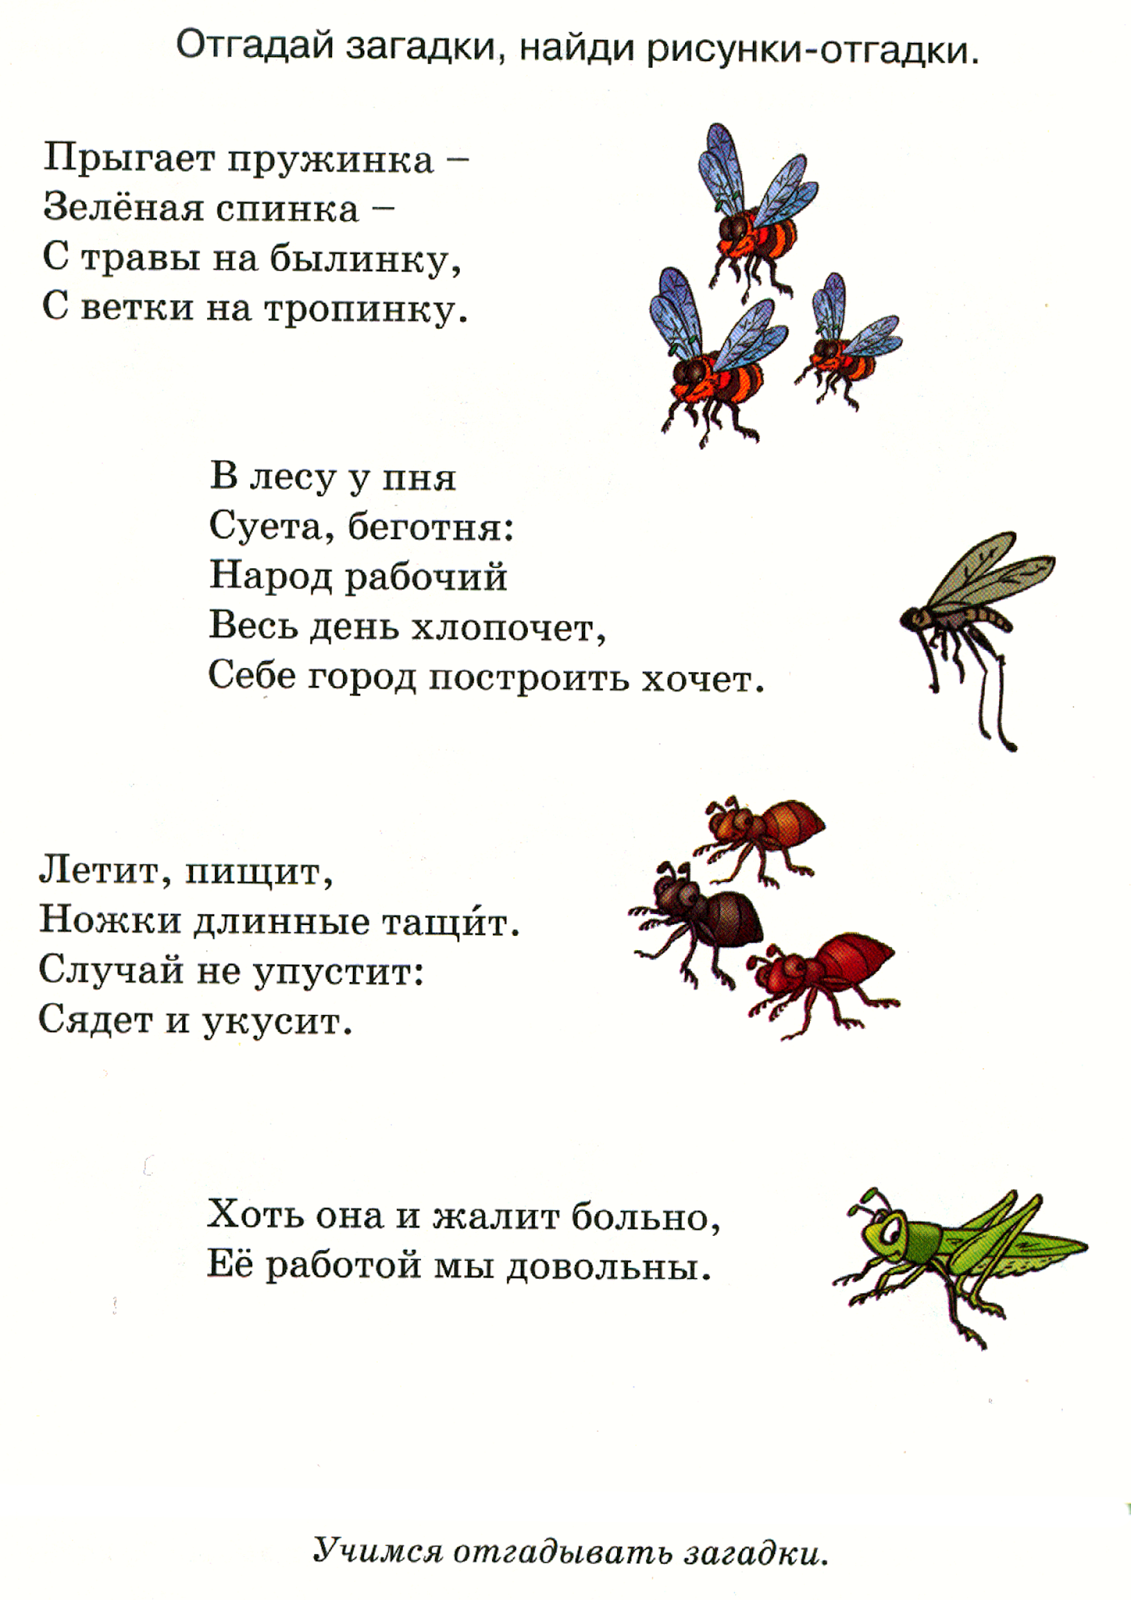 Загадки про насекомых для детей 5. Загадки про насекомых для детей 6-7. Загадки про насекомых для детей. Загадки про насекомых для дошкольников. Стихи про насекомых для малышей.